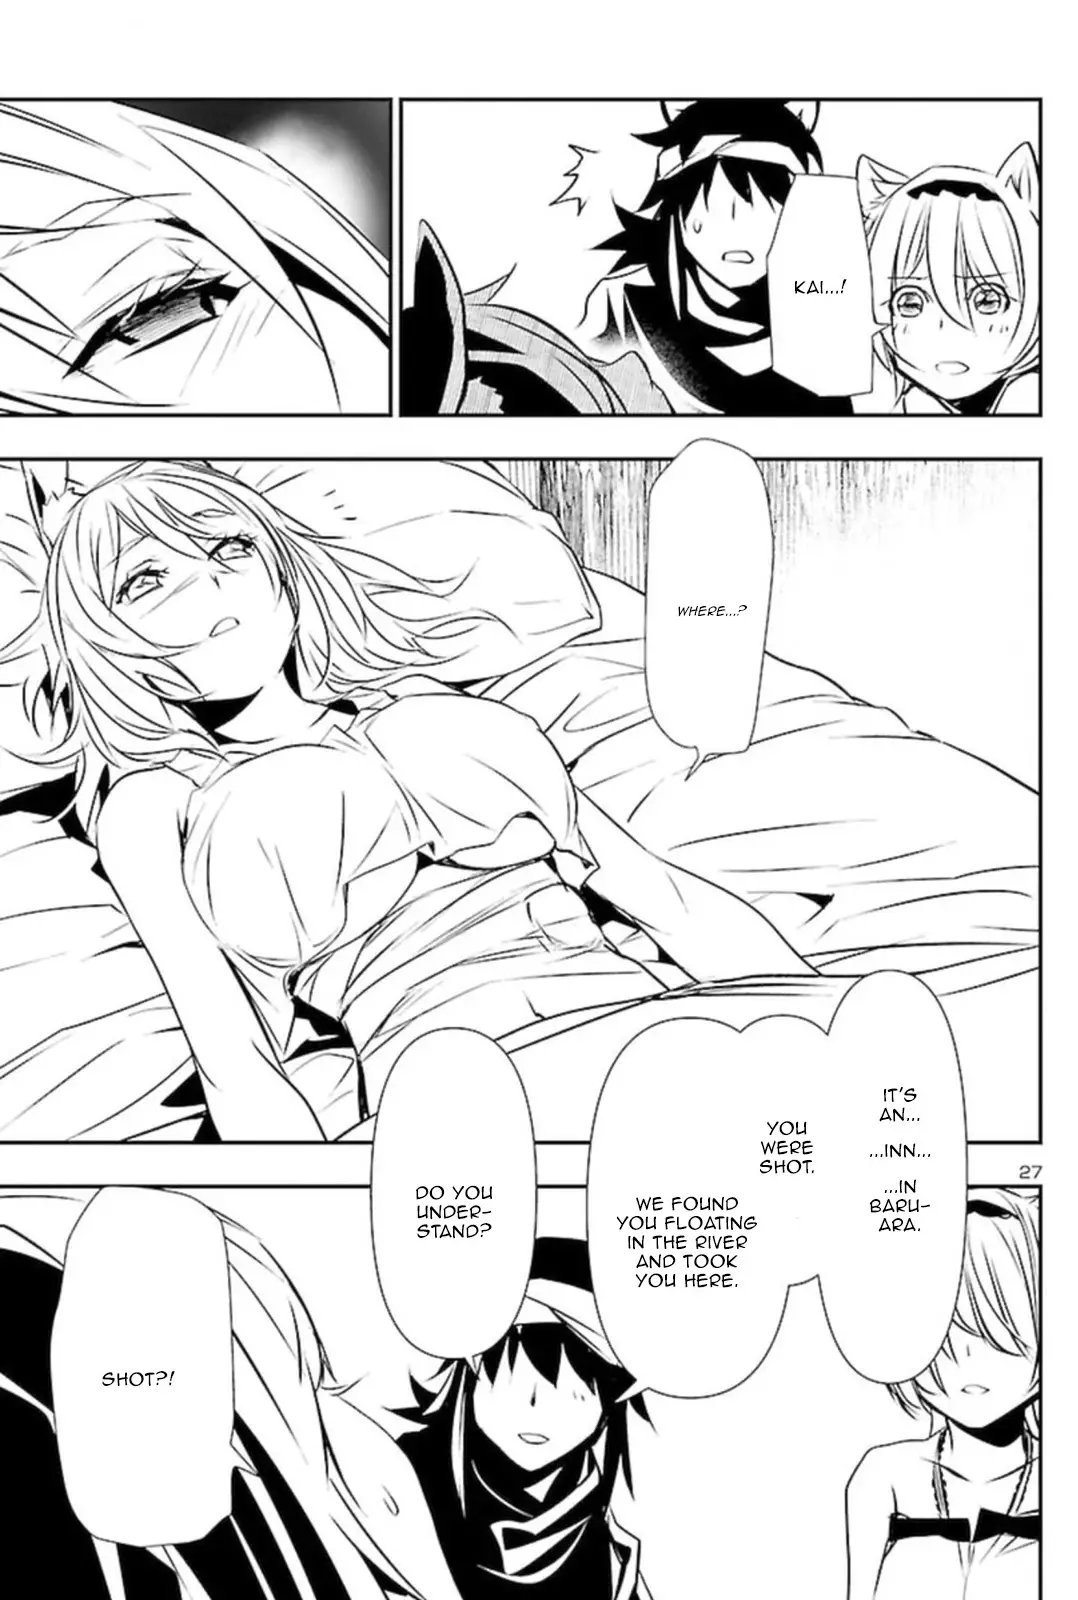 Shinju no Nectar - 53 page 27